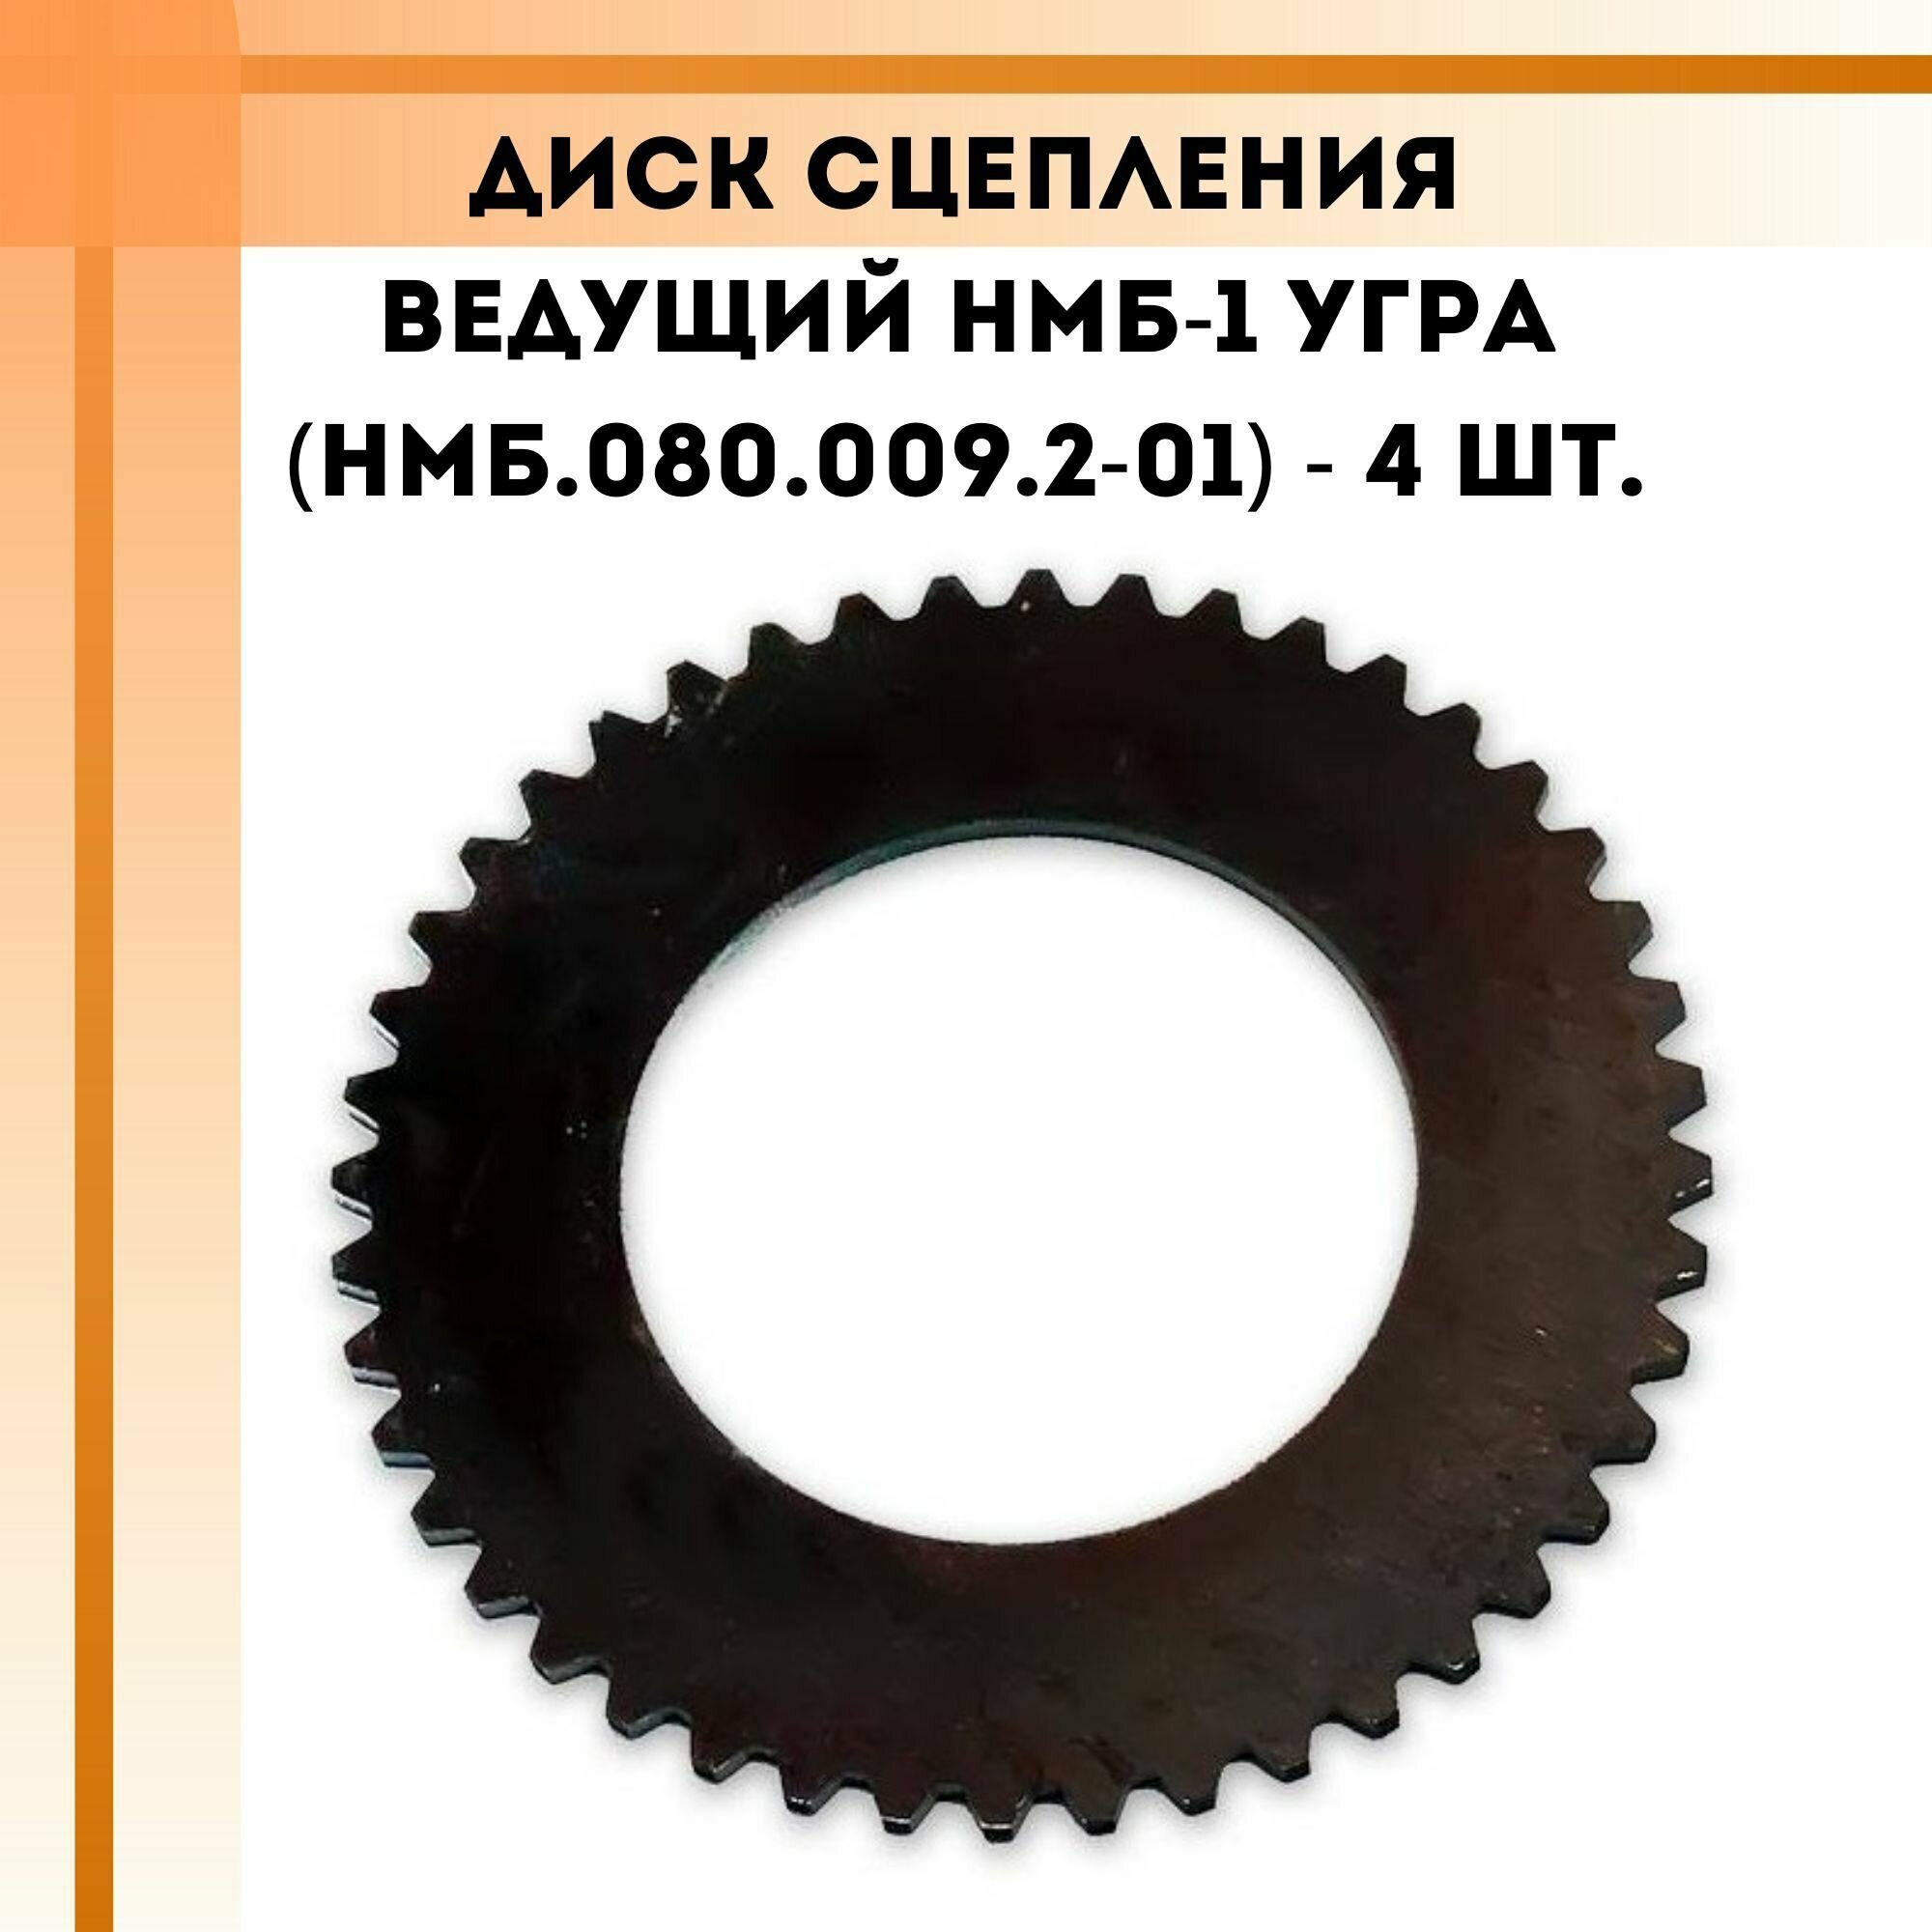 Комплект дисков сцепления ведущих НМБ-1 Угра (НМБ.080.009.2-01) 4 шт